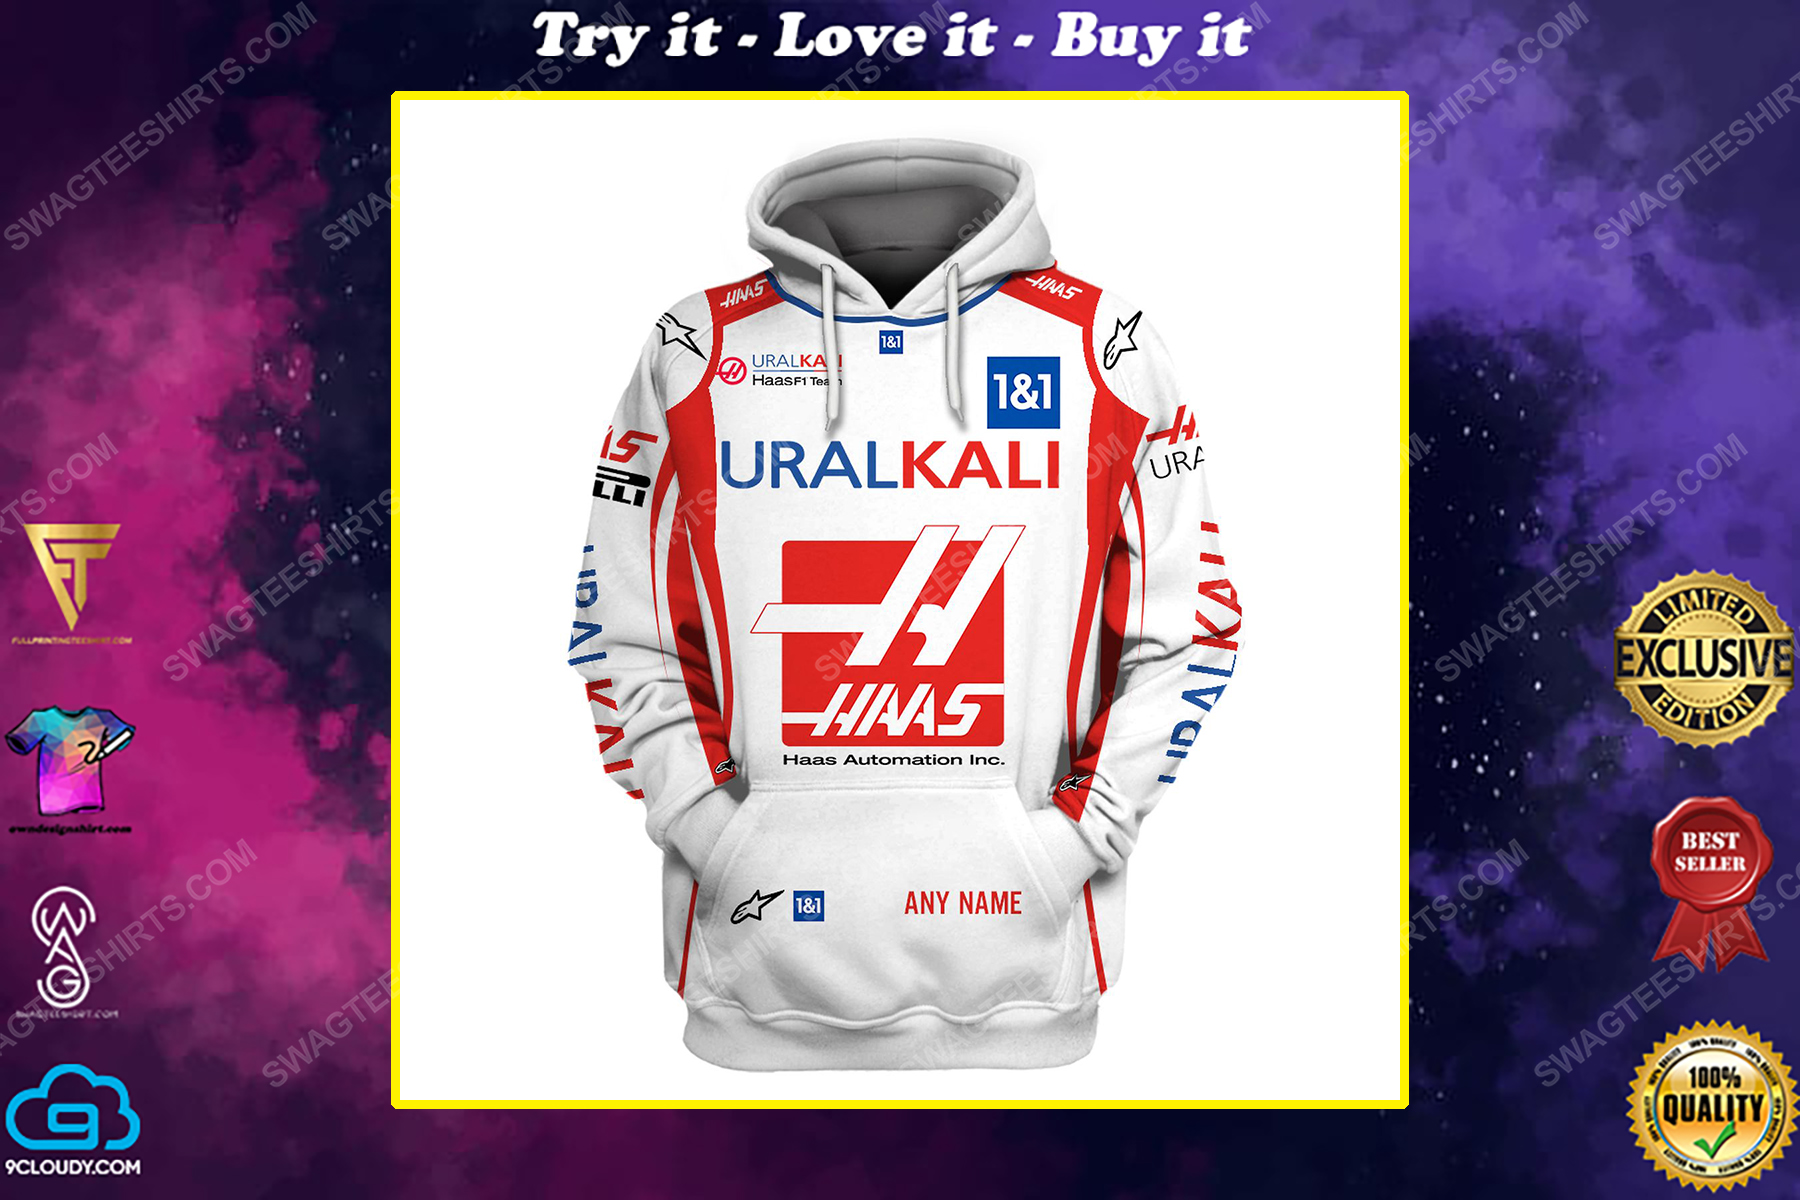 Custom uralkali racing team motorsport full printing shirt